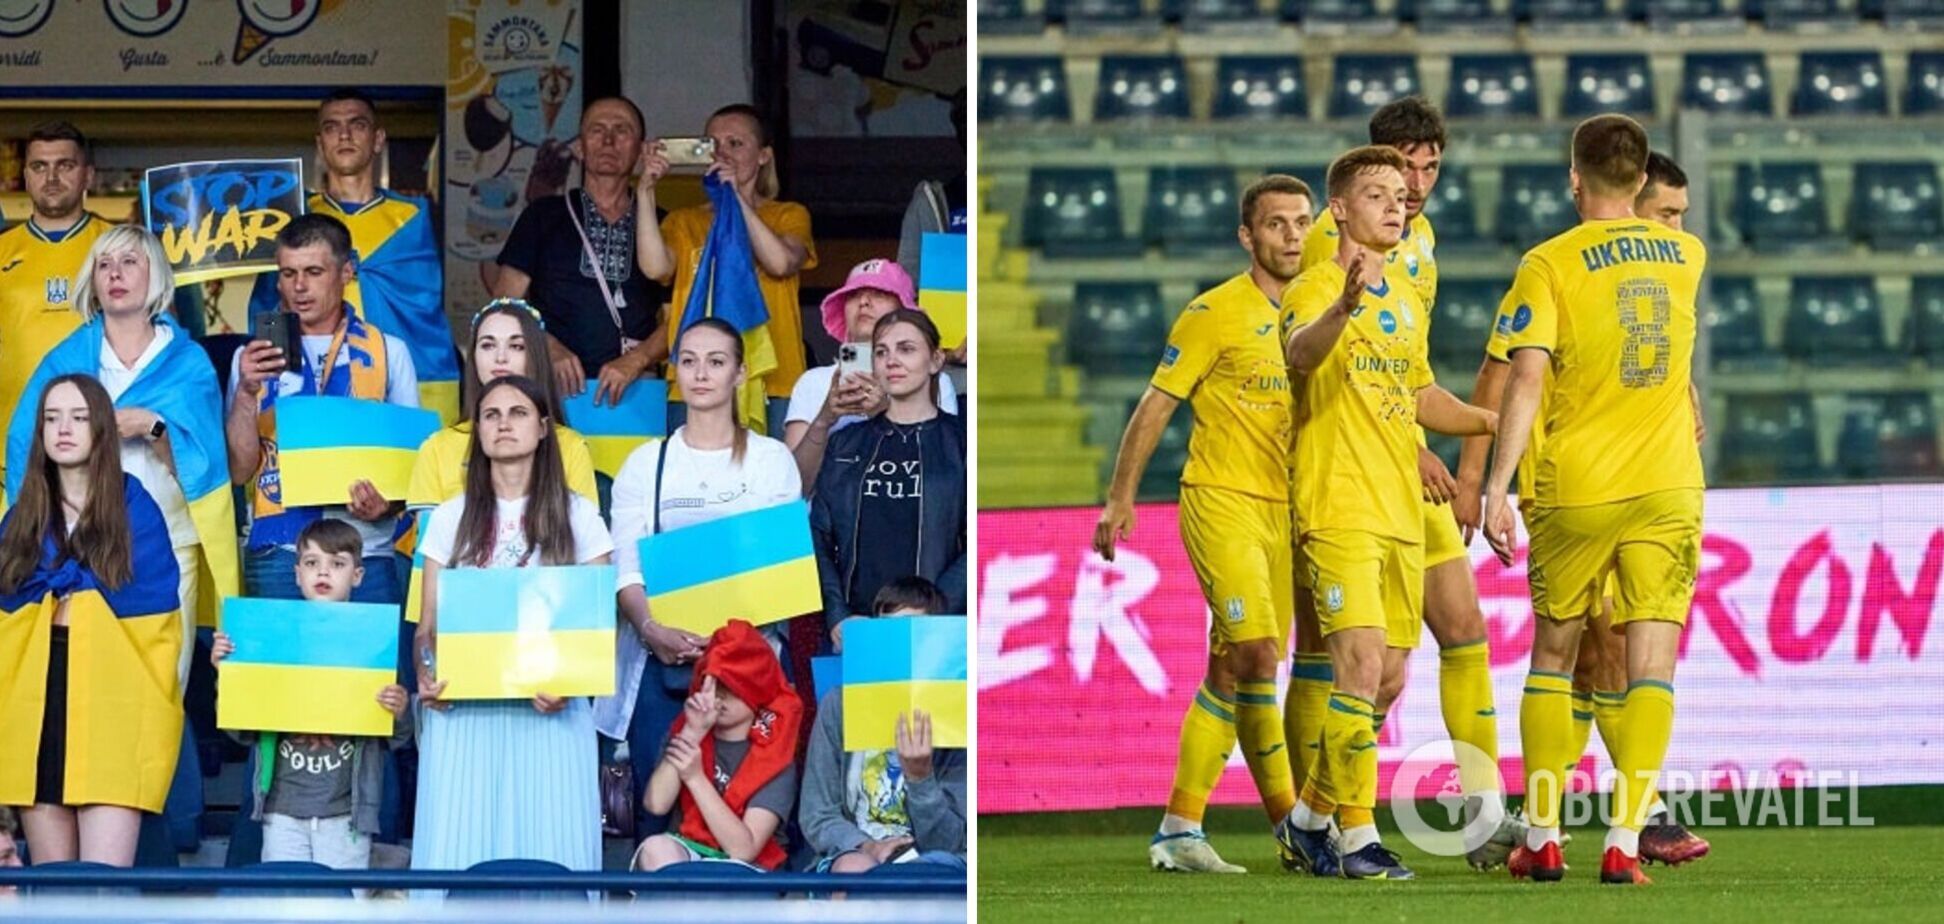 Единение нации: трибуны стадиона в Италии эмоционально спели гимн Украины. Видео